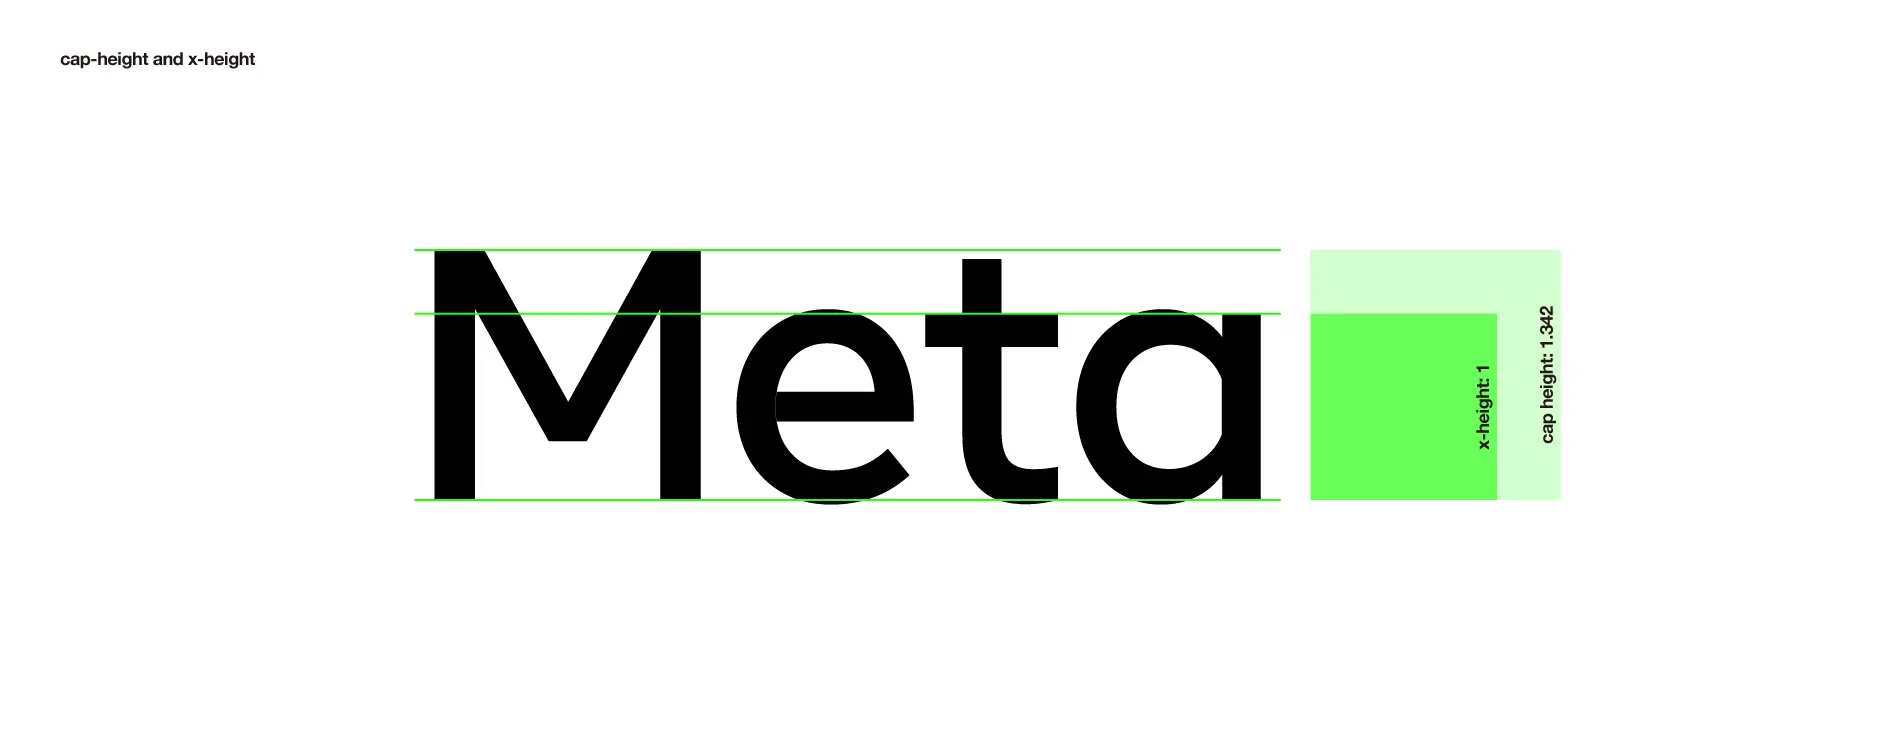 Metaのxハイト分析